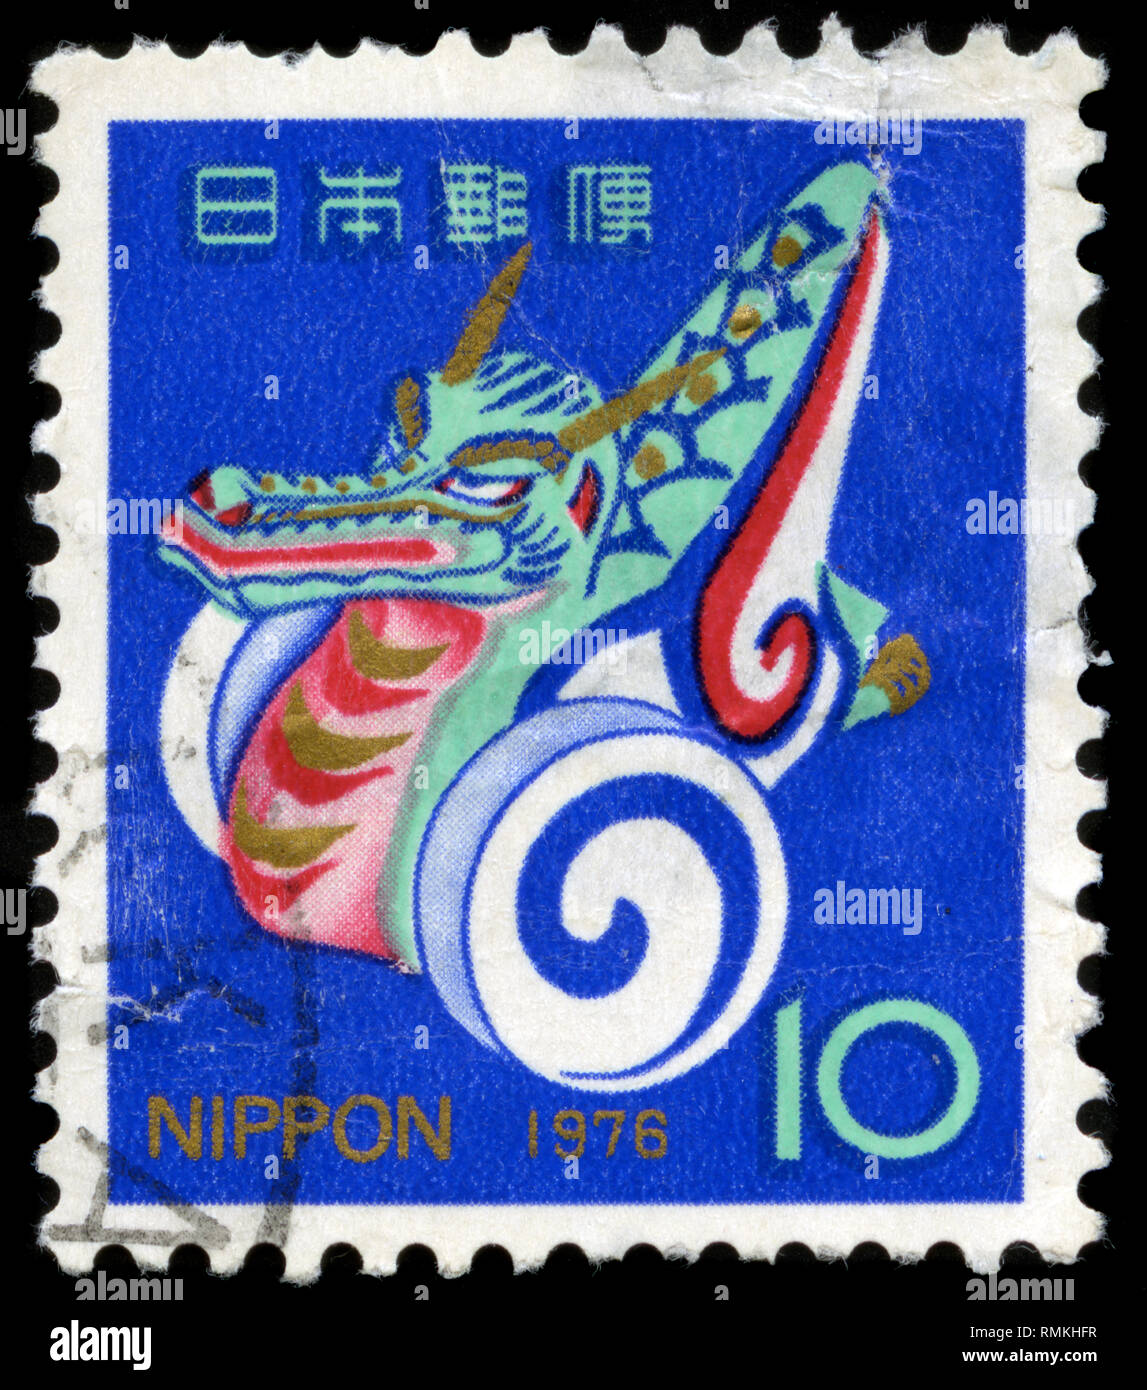 Timbre-poste du Japon dans les voeux du Nouvel An 1976 - Année du Dragon série émise en 1975 Banque D'Images